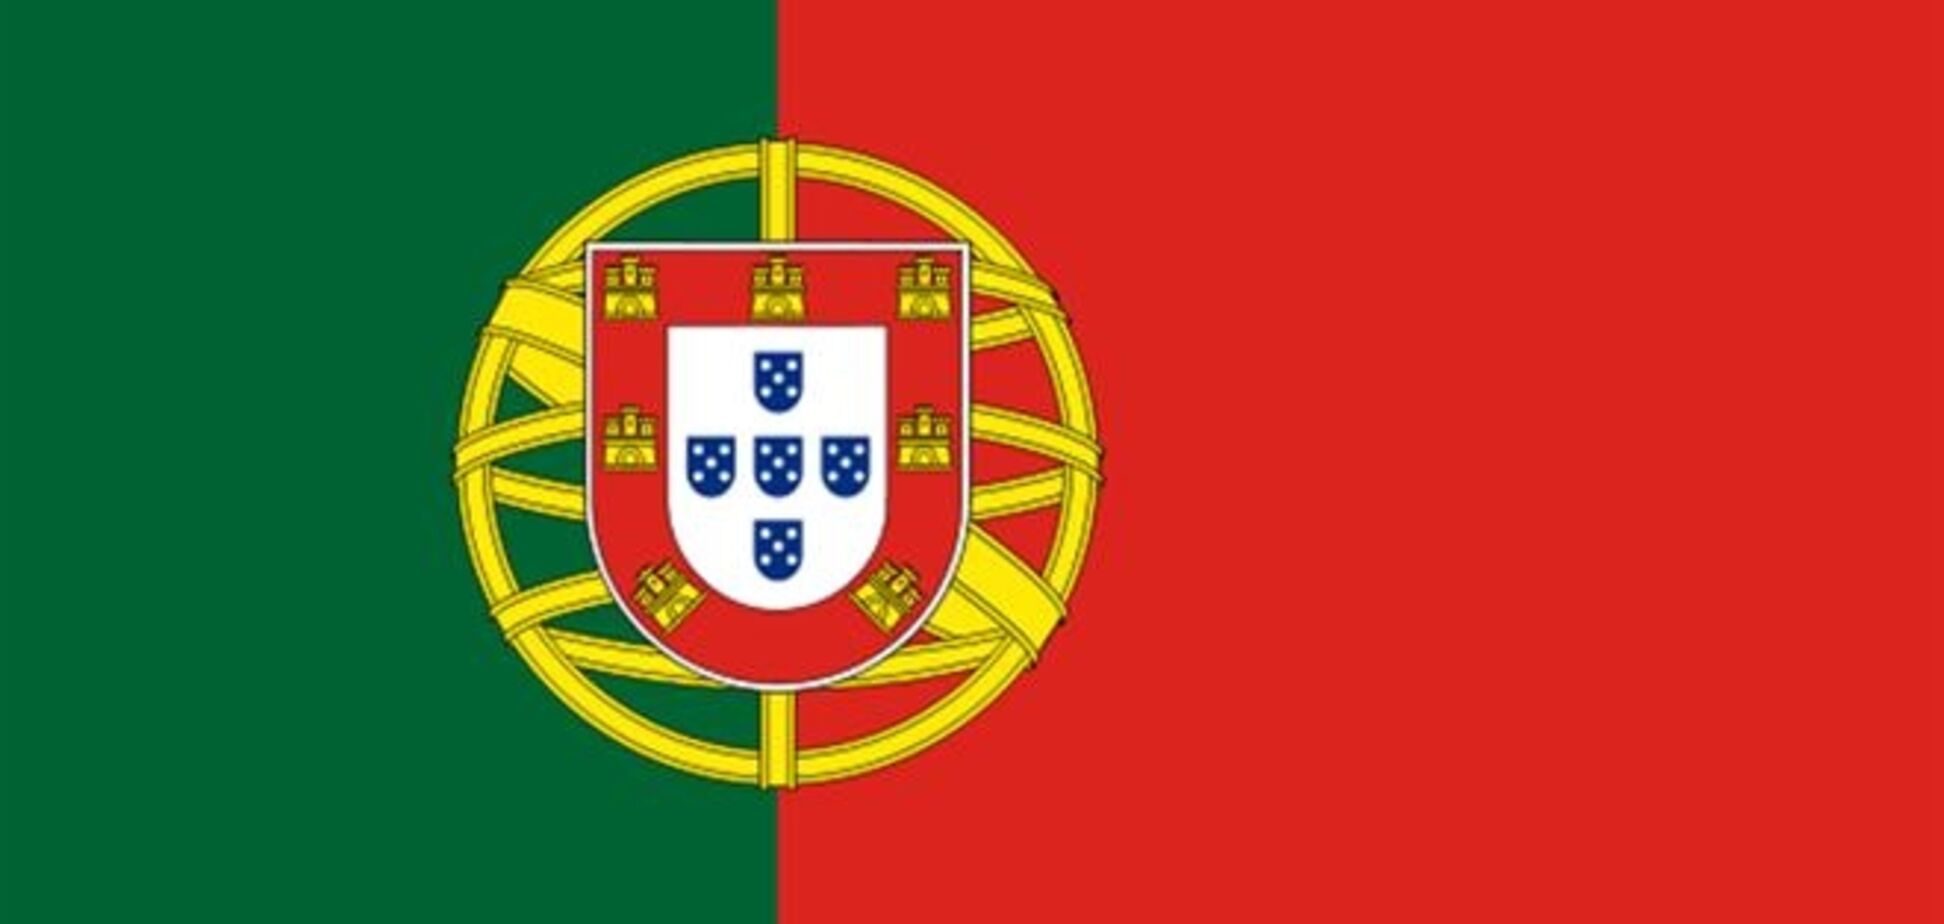 Налогоплательщиков в Португалии будут поощрять автомобилями